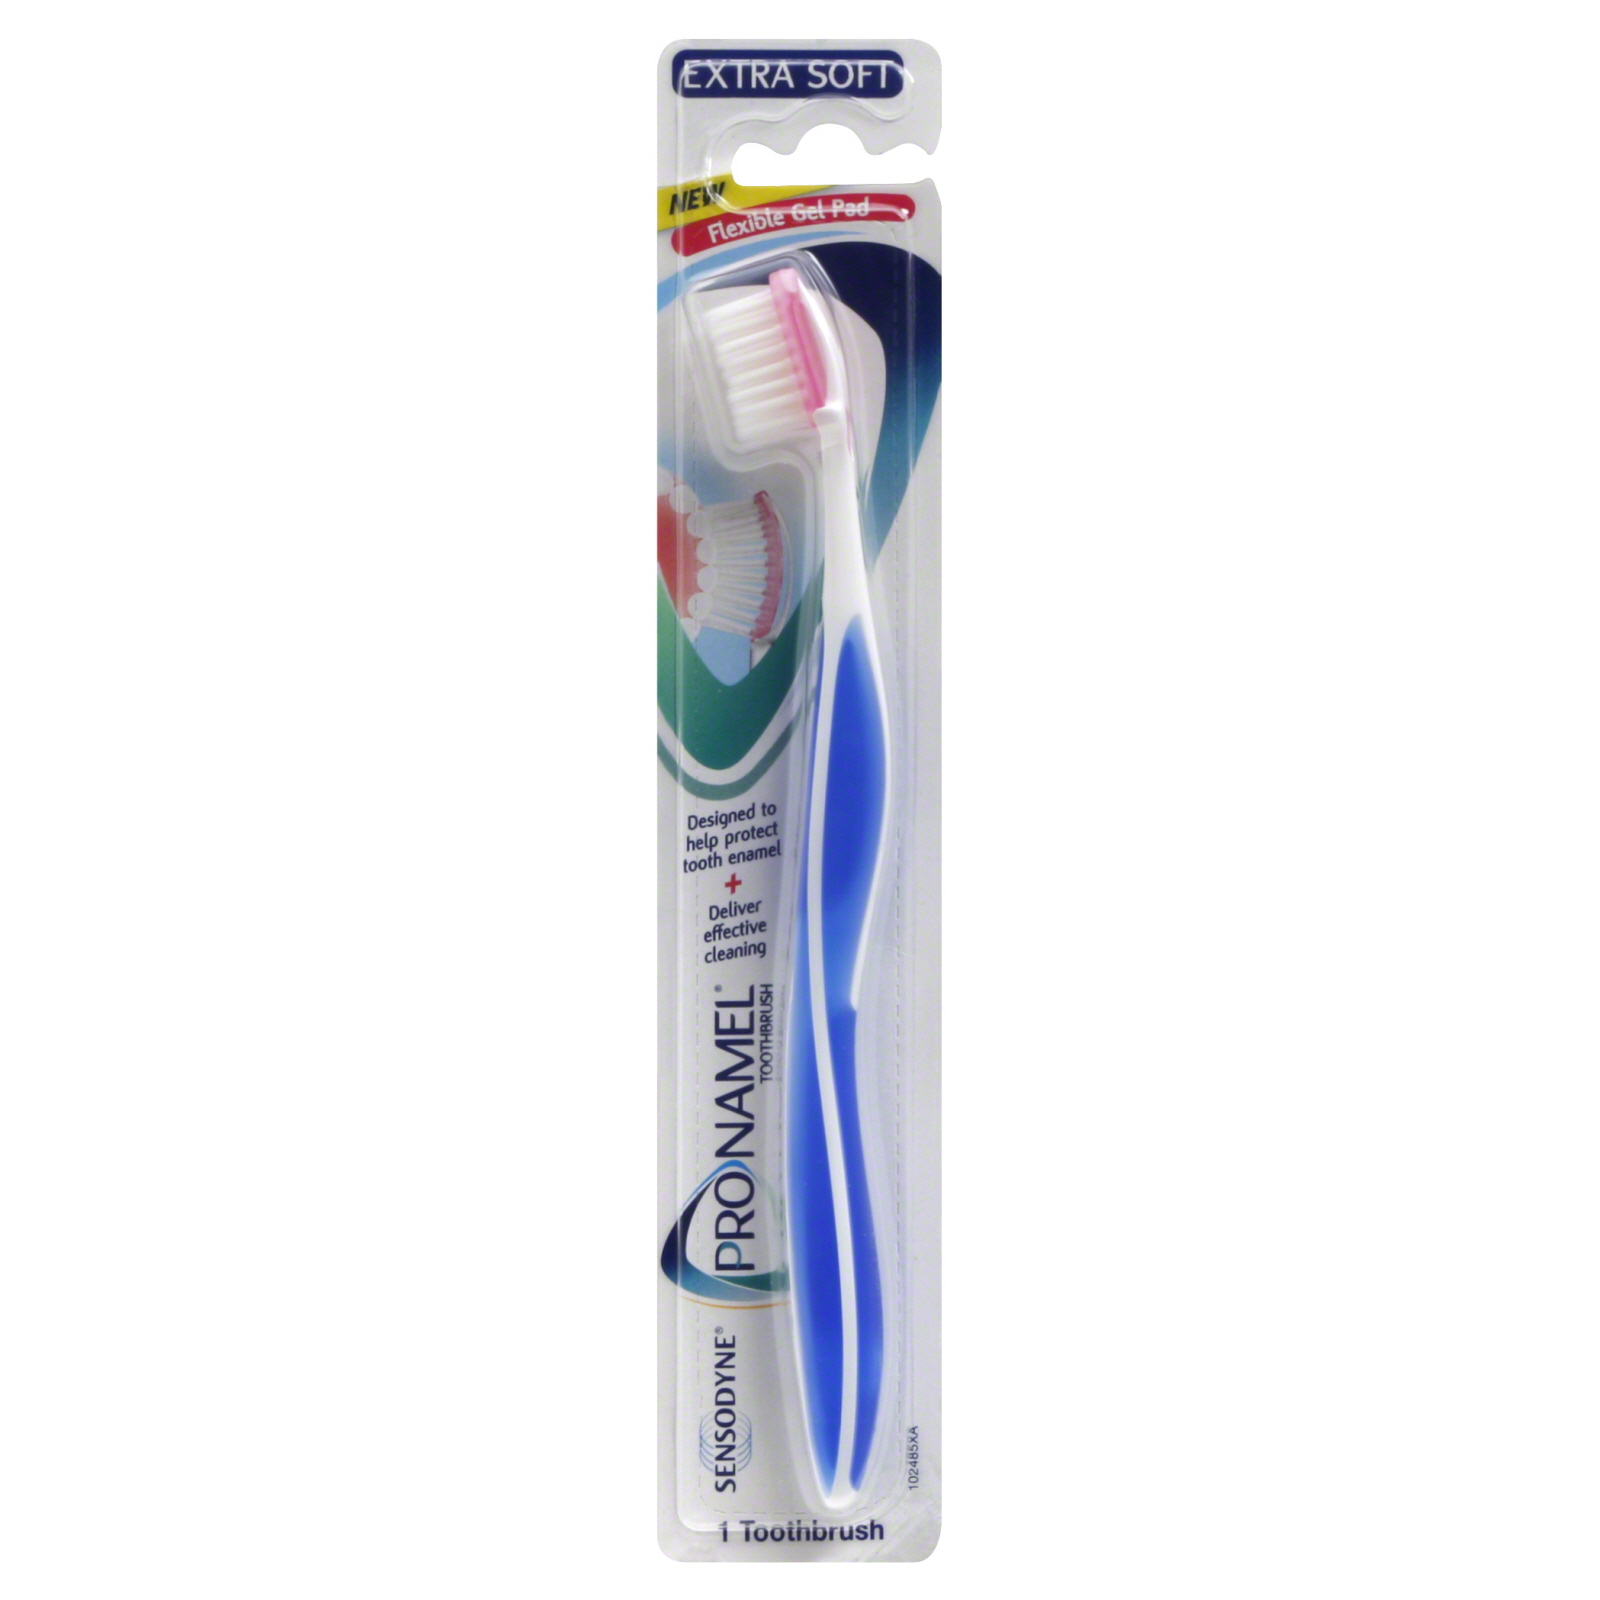 Sensodyne Pronamel Extra Soft Toothbrush